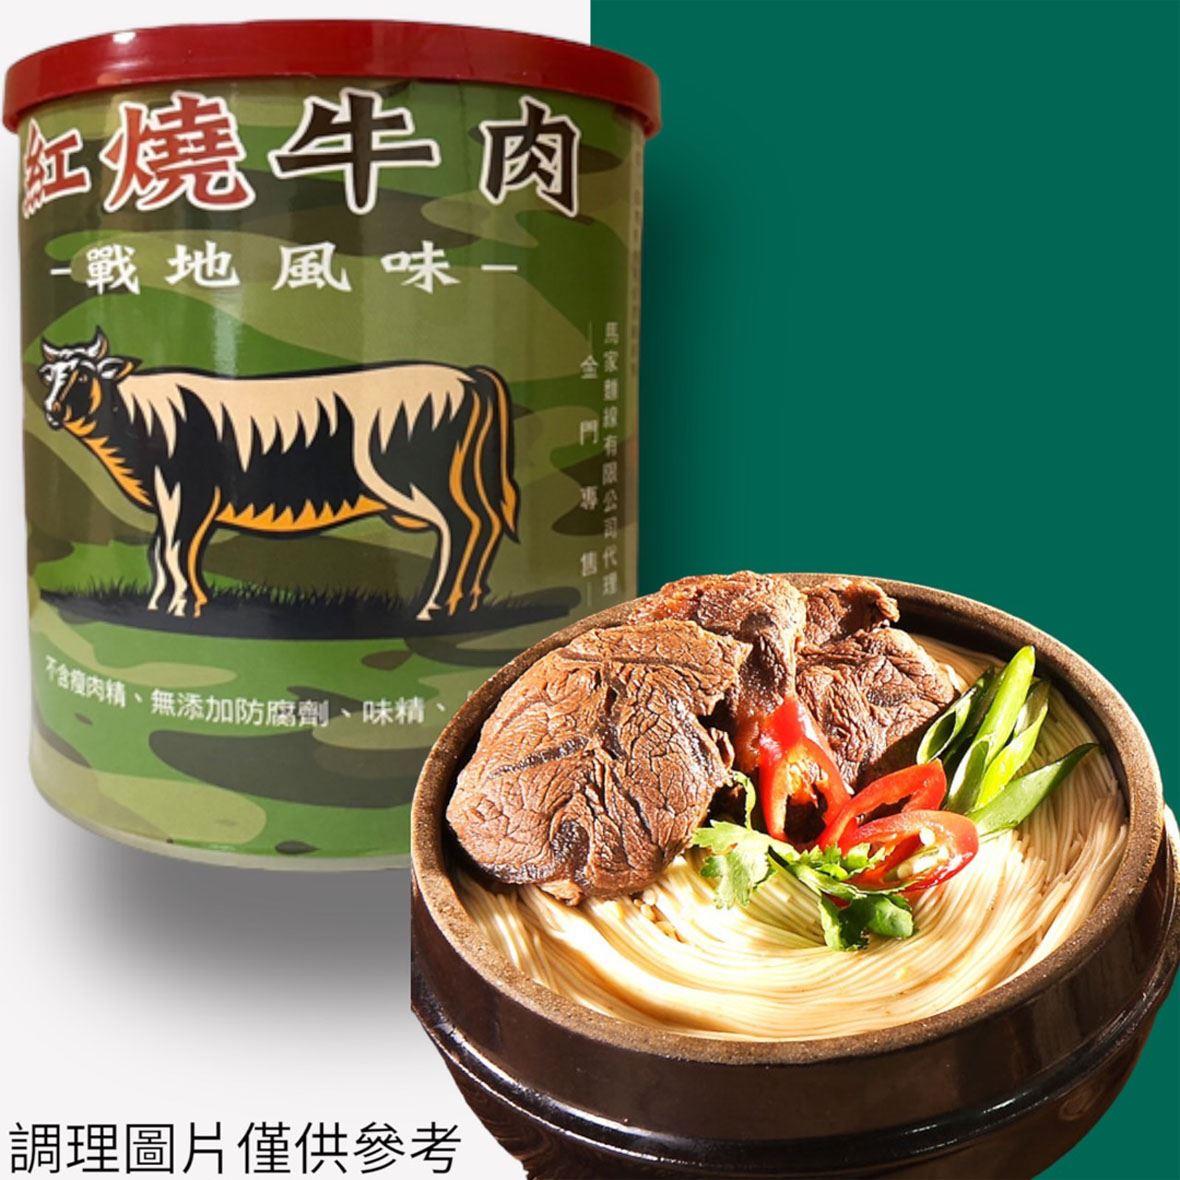 【馬家麵線】紅燒牛肉(440g/罐)